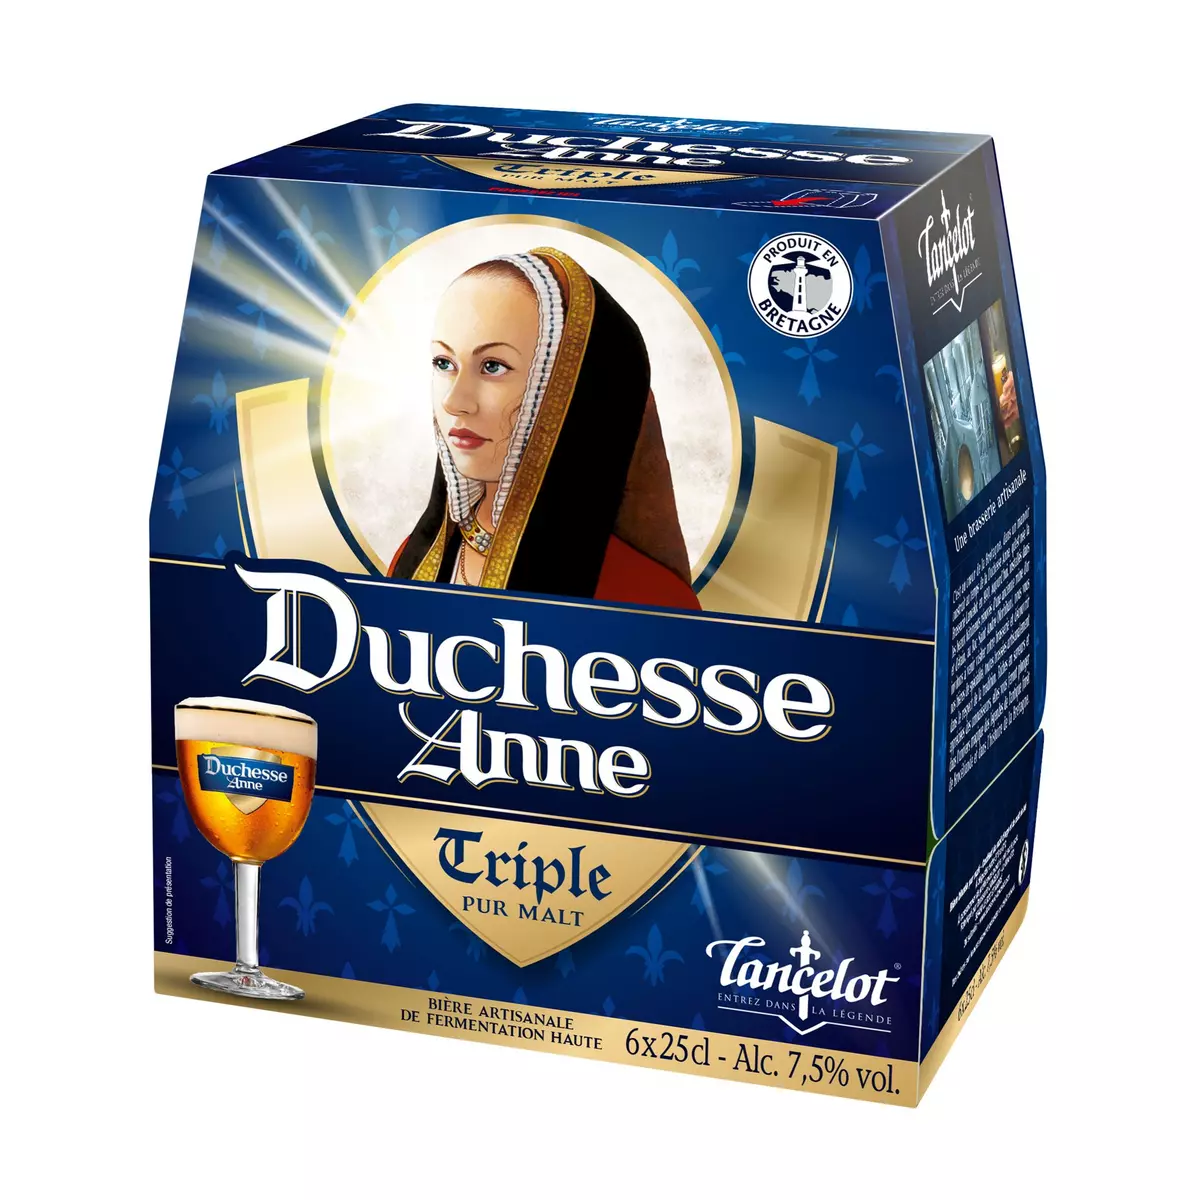 DUCHESSE ANNE Bière triple bouteilles 7.5 % 6x25cl